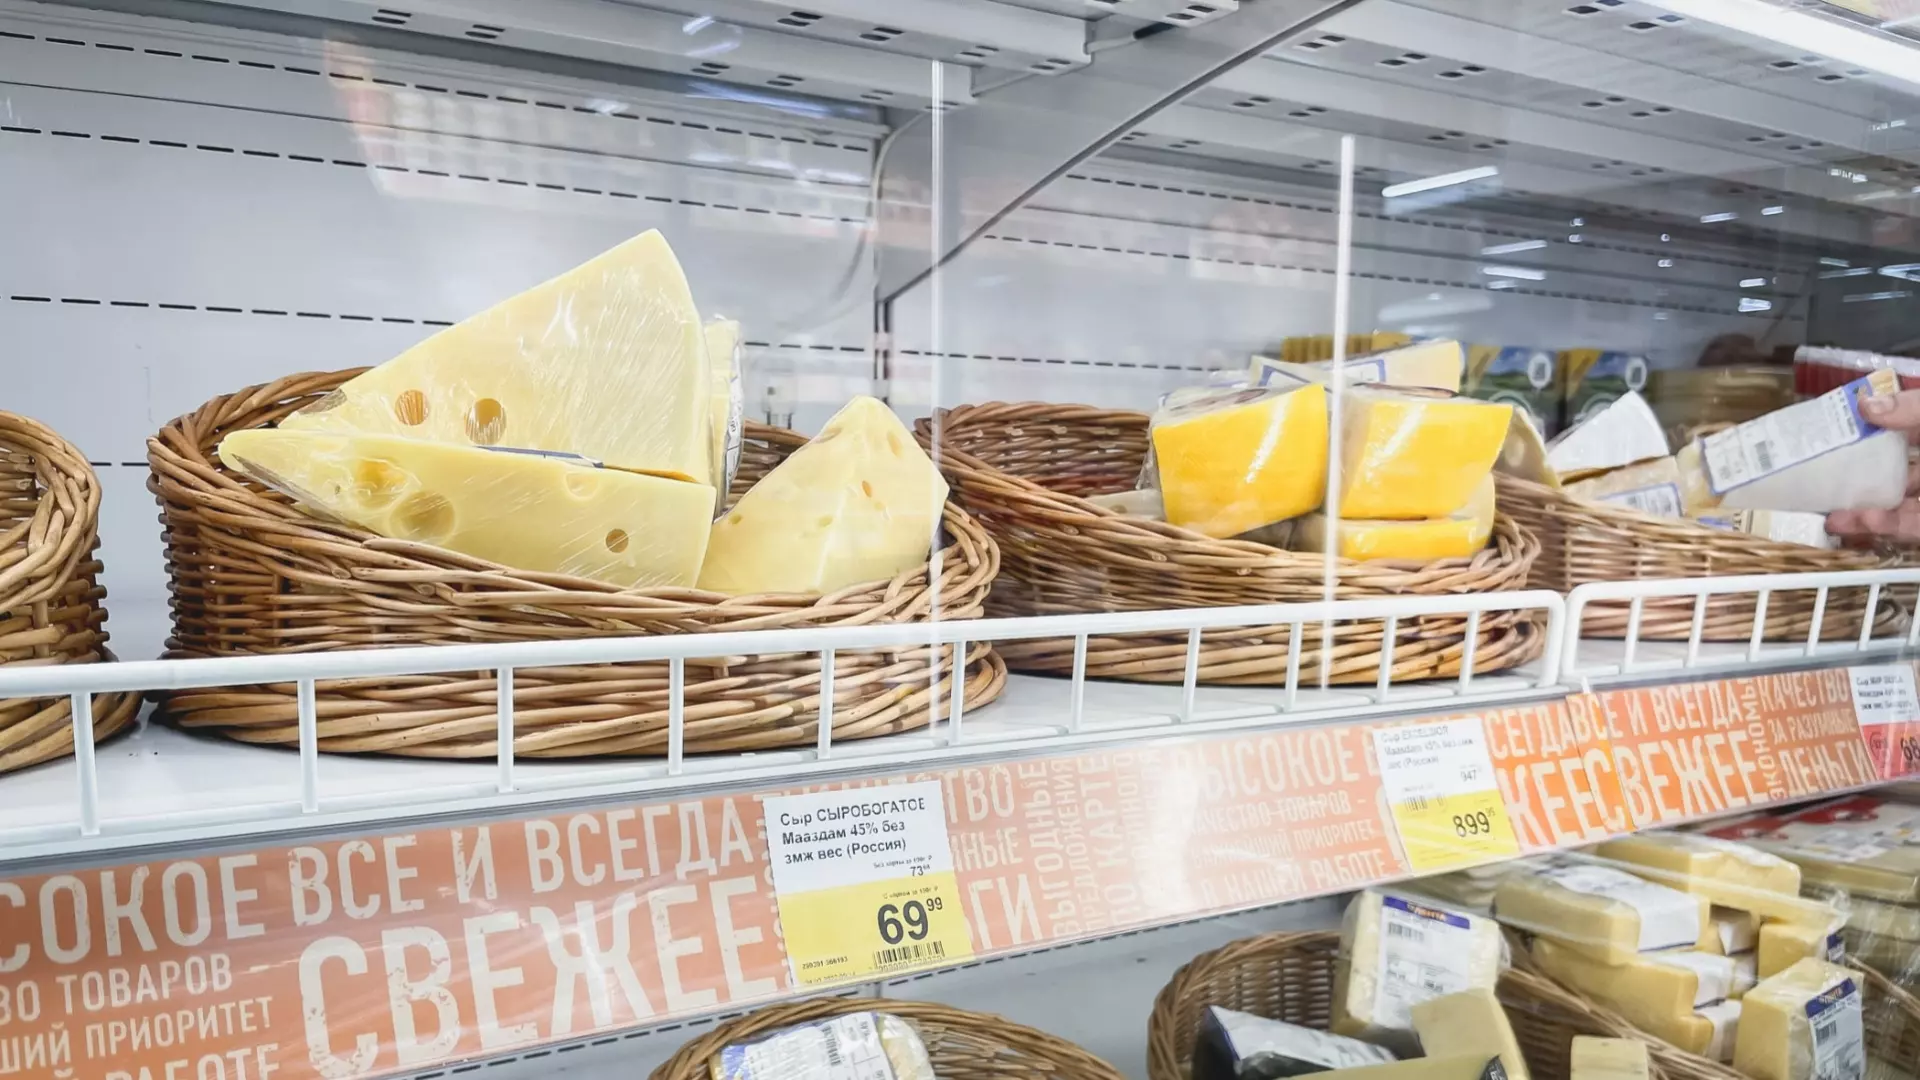 Полиция задержала подозреваемого в краже 5 кг сыра из магазина белгородца